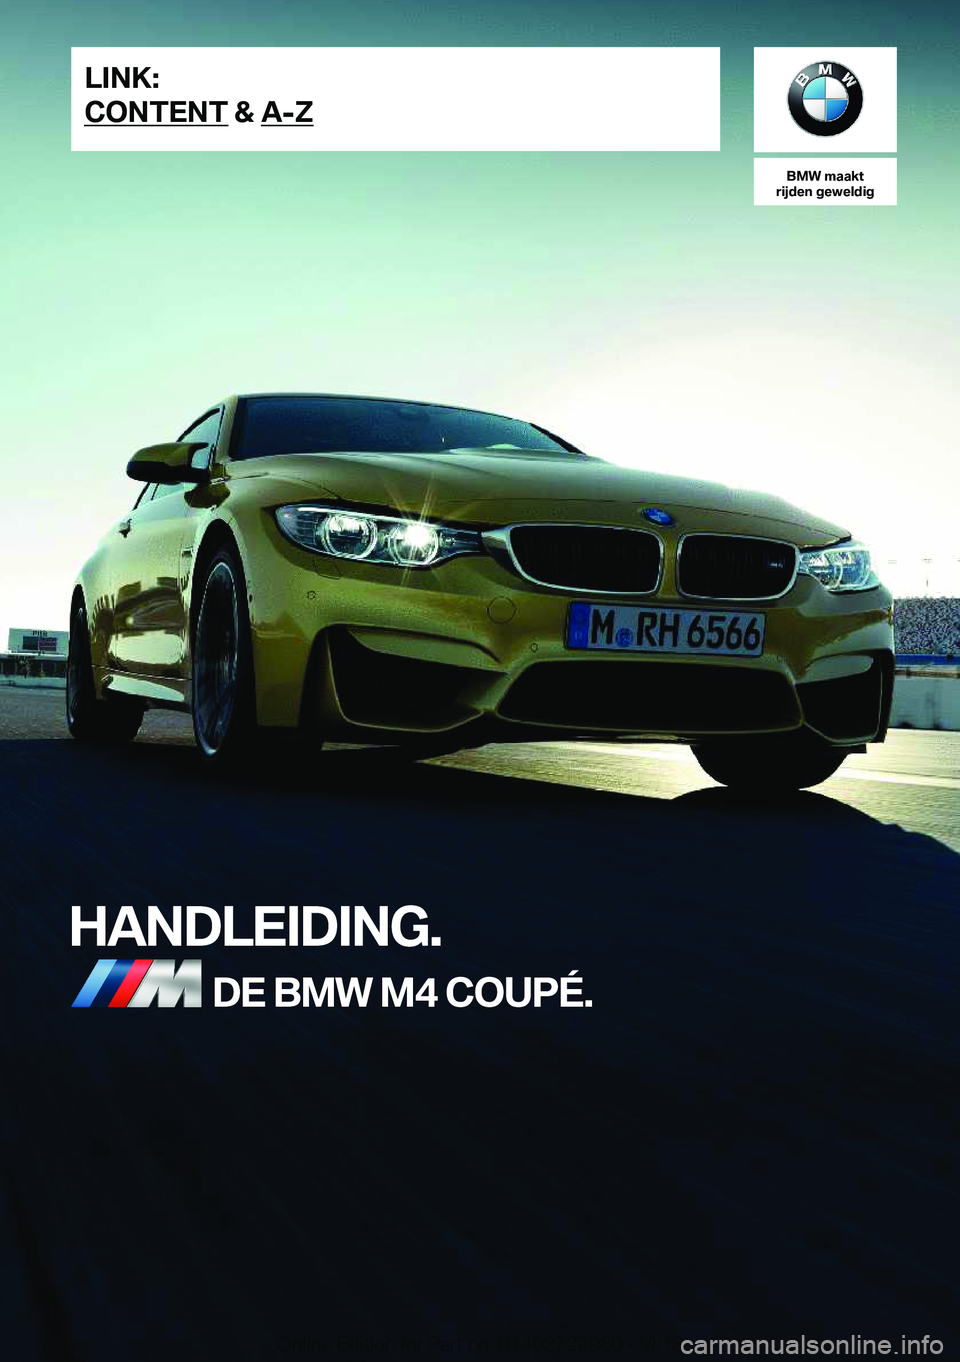 BMW M4 2019  Instructieboekjes (in Dutch) �B�M�W��m�a�a�k�t
�r�i�j�d�e�n��g�e�w�e�l�d�i�g
�H�A�N�D�L�E�I�D�I�N�G�.�D�E��B�M�W��M�4��C�O�U�P�